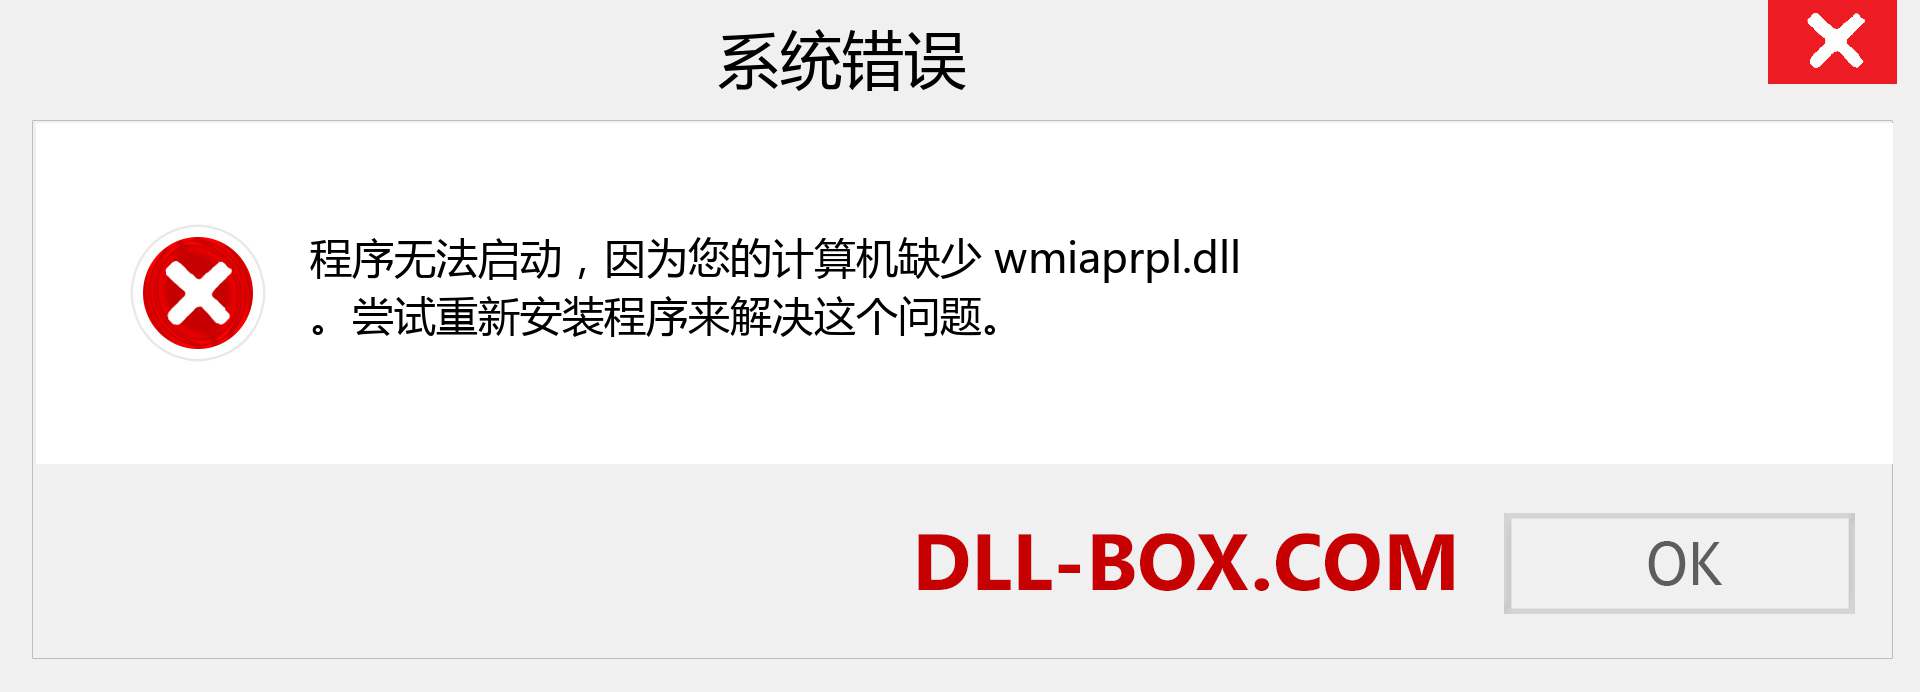 wmiaprpl.dll 文件丢失？。 适用于 Windows 7、8、10 的下载 - 修复 Windows、照片、图像上的 wmiaprpl dll 丢失错误